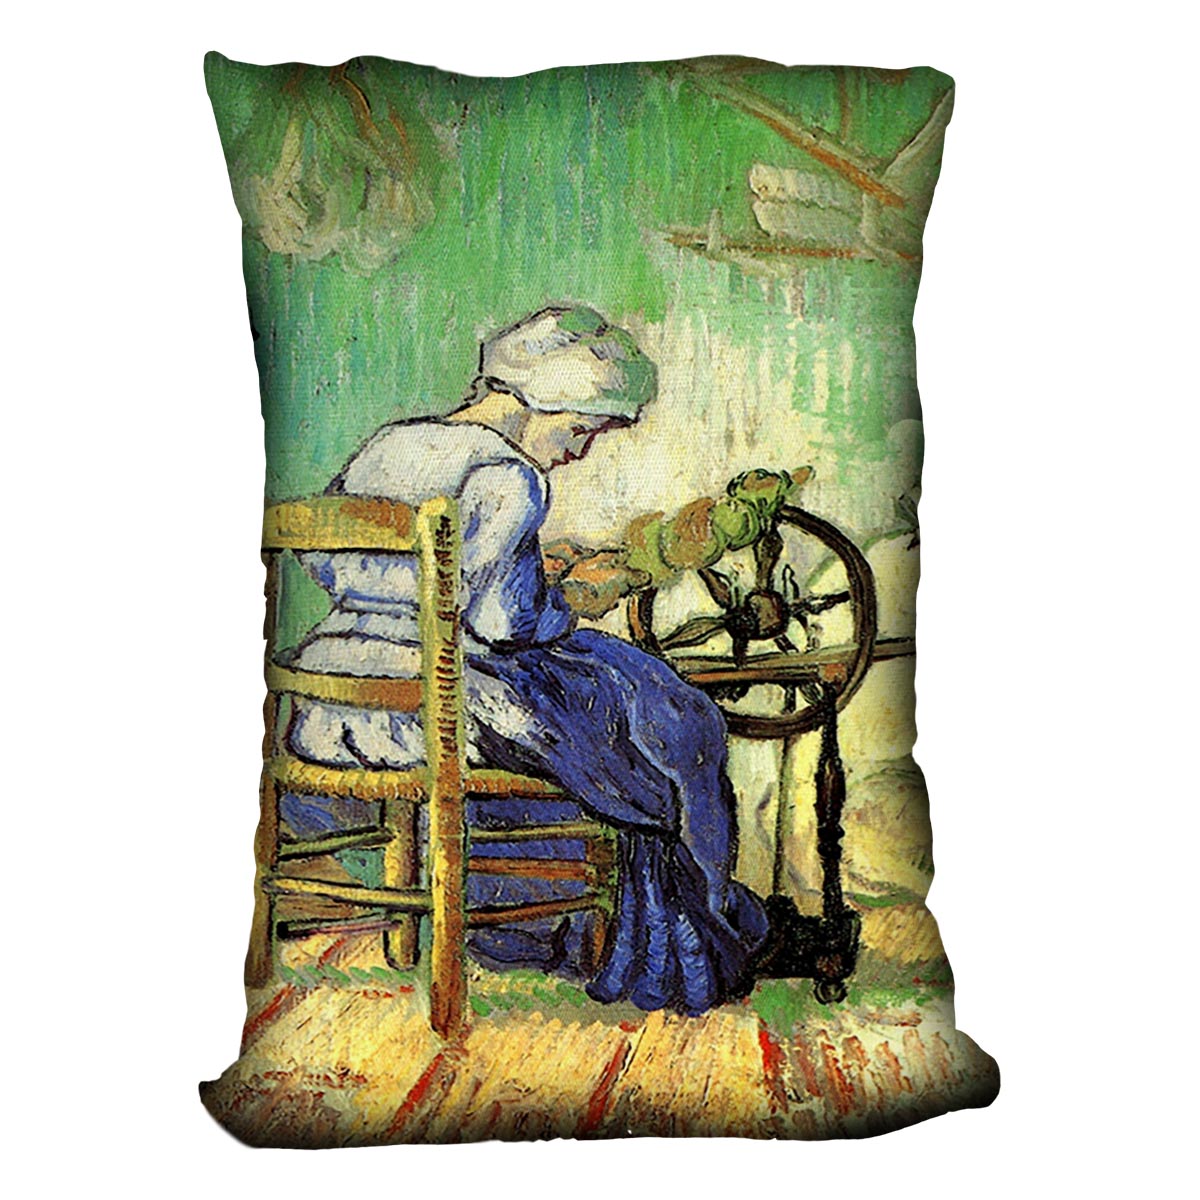 The Spinner by Van Gogh Cushion